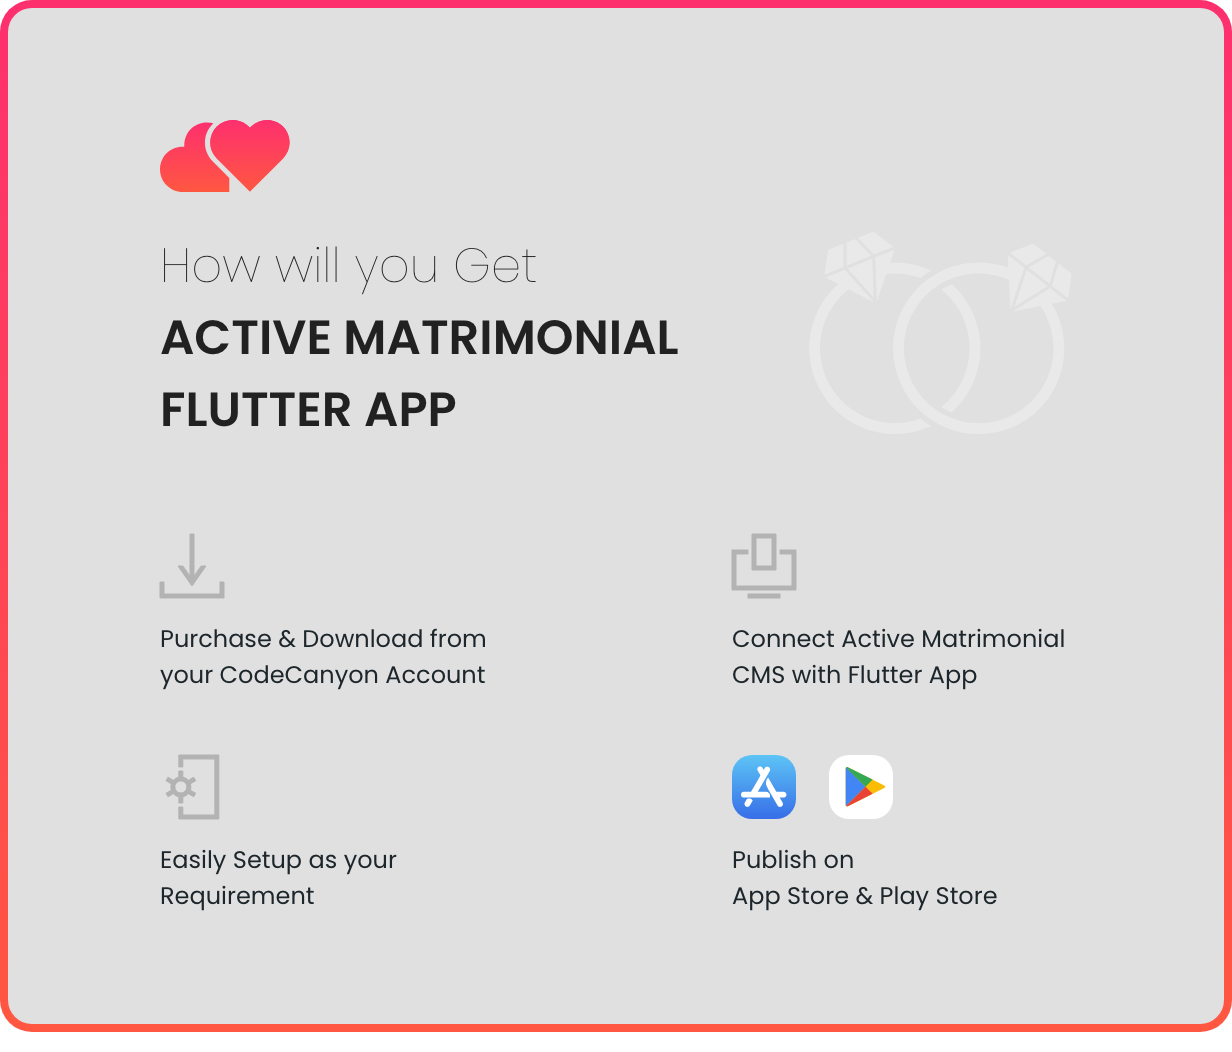 Active Matrimonial Flutter App - 3